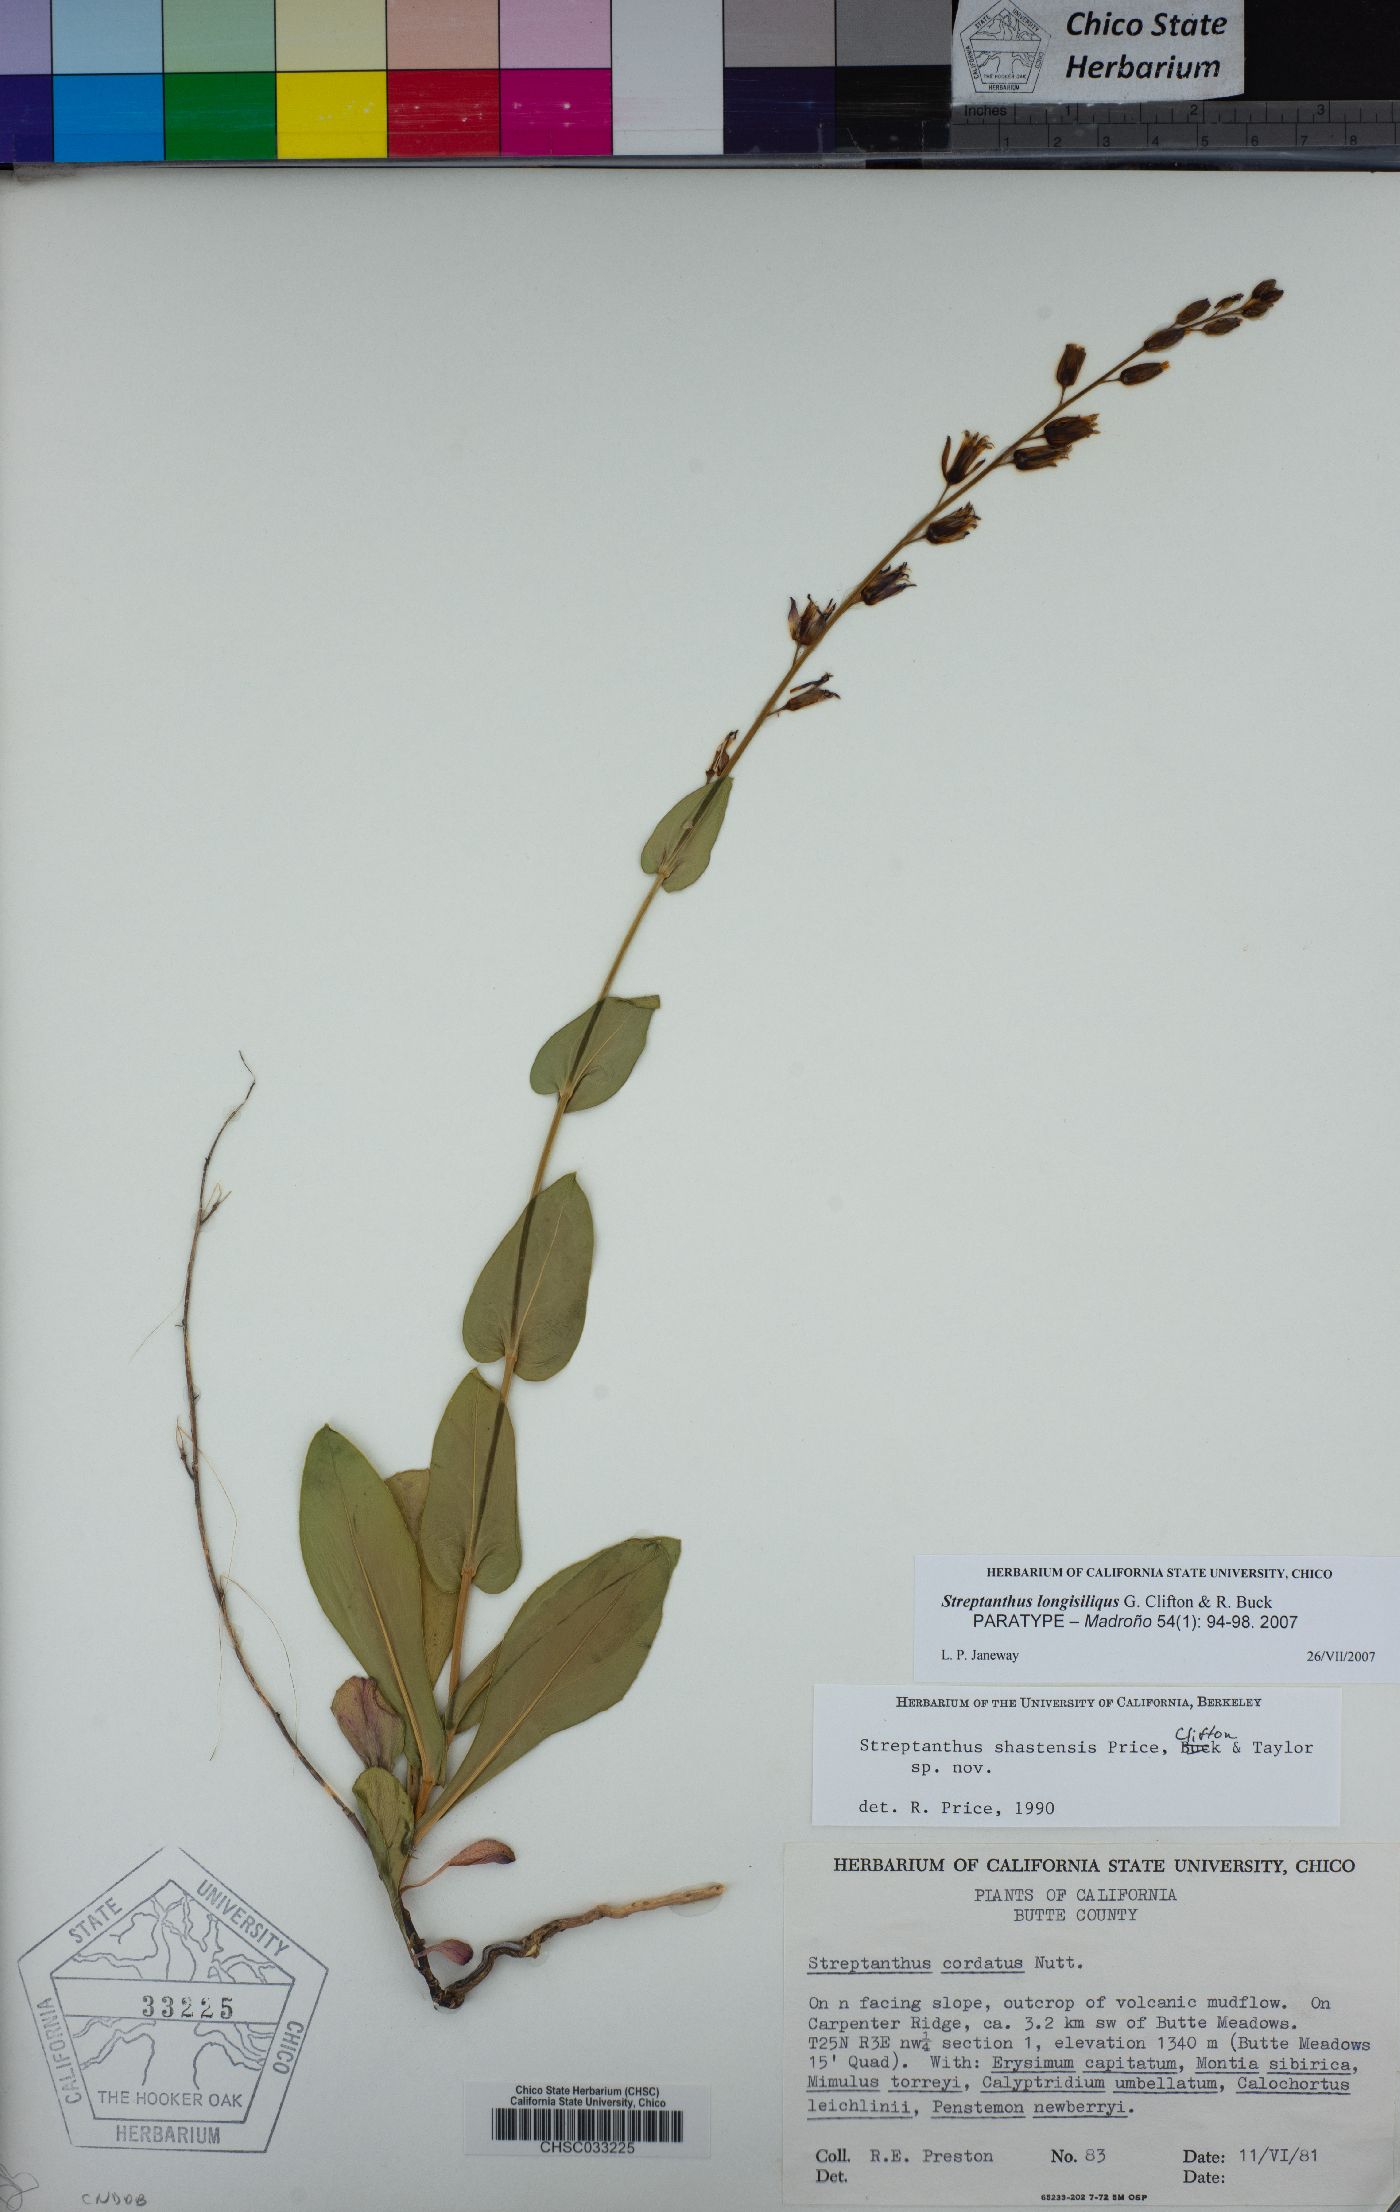 Streptanthus longisiliquus image